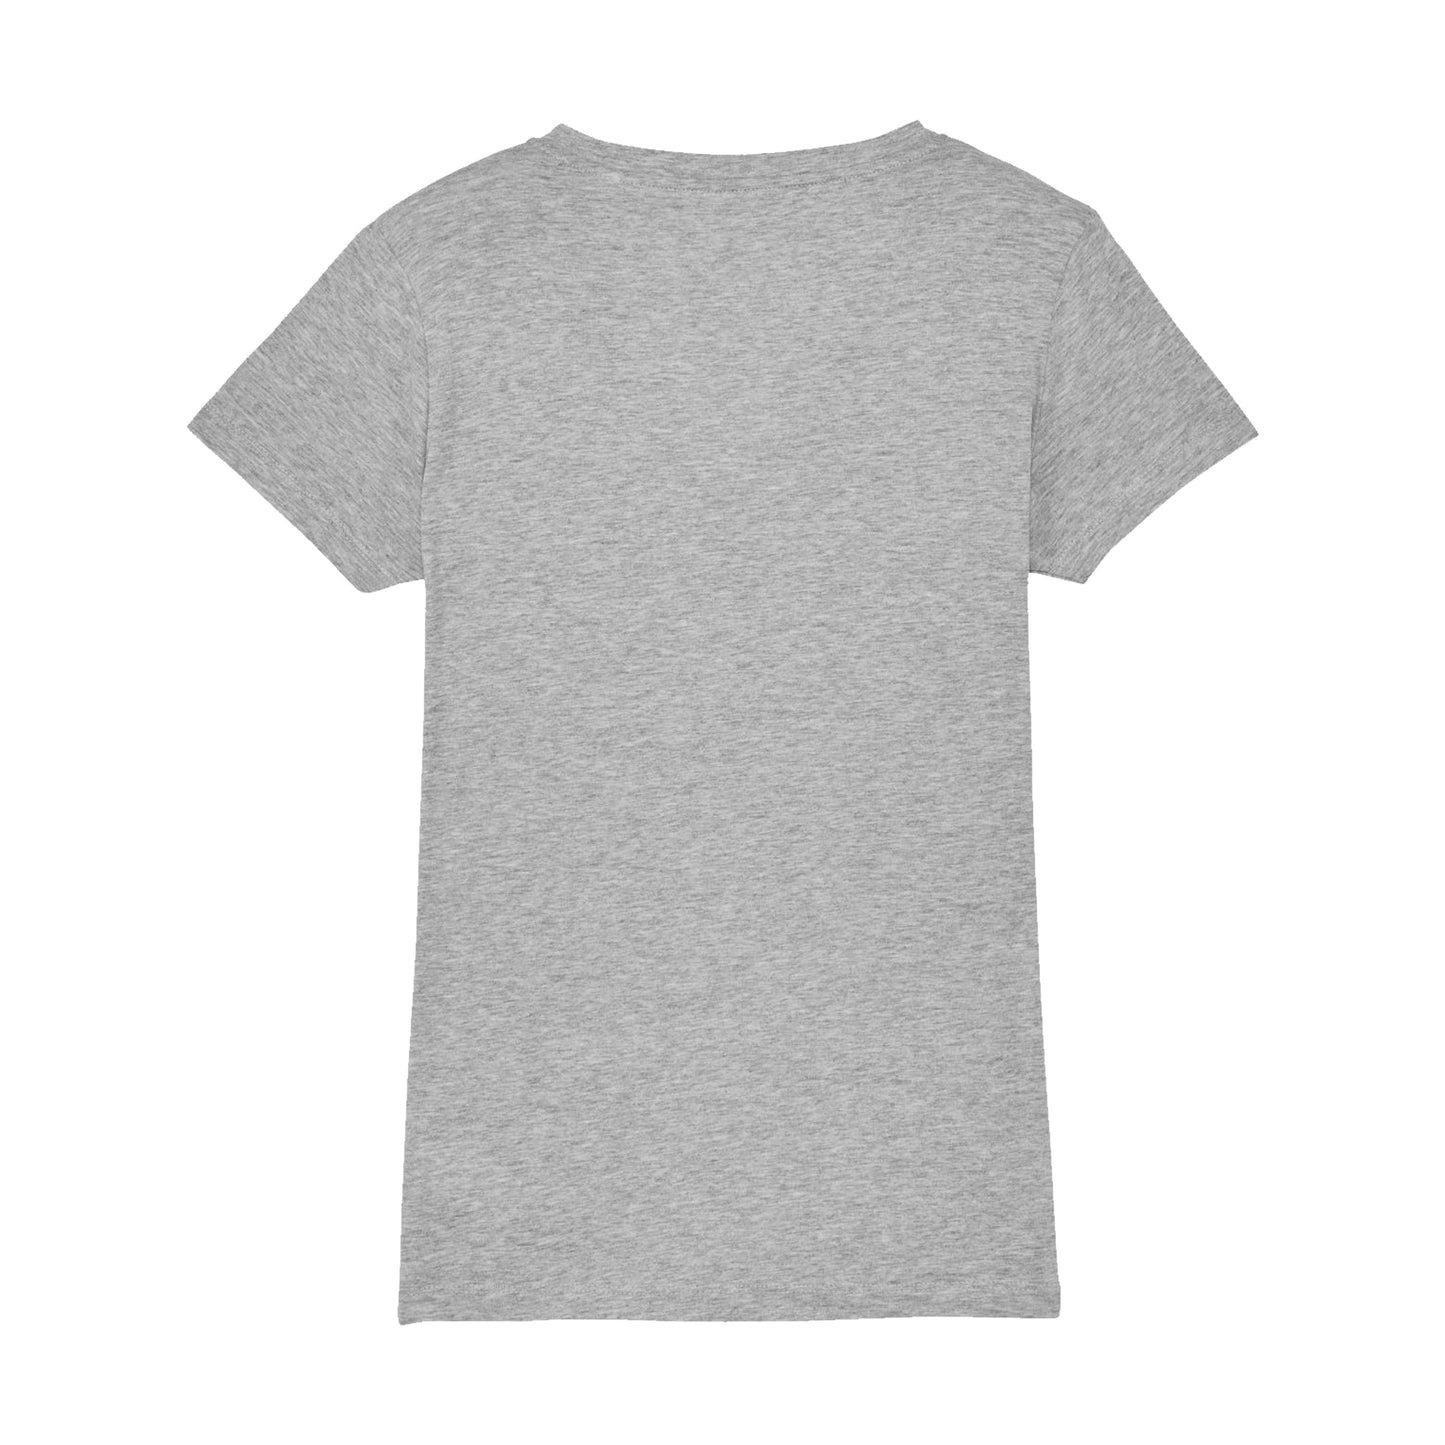 Black Hound Womens Grey V-Neck T-Shirt